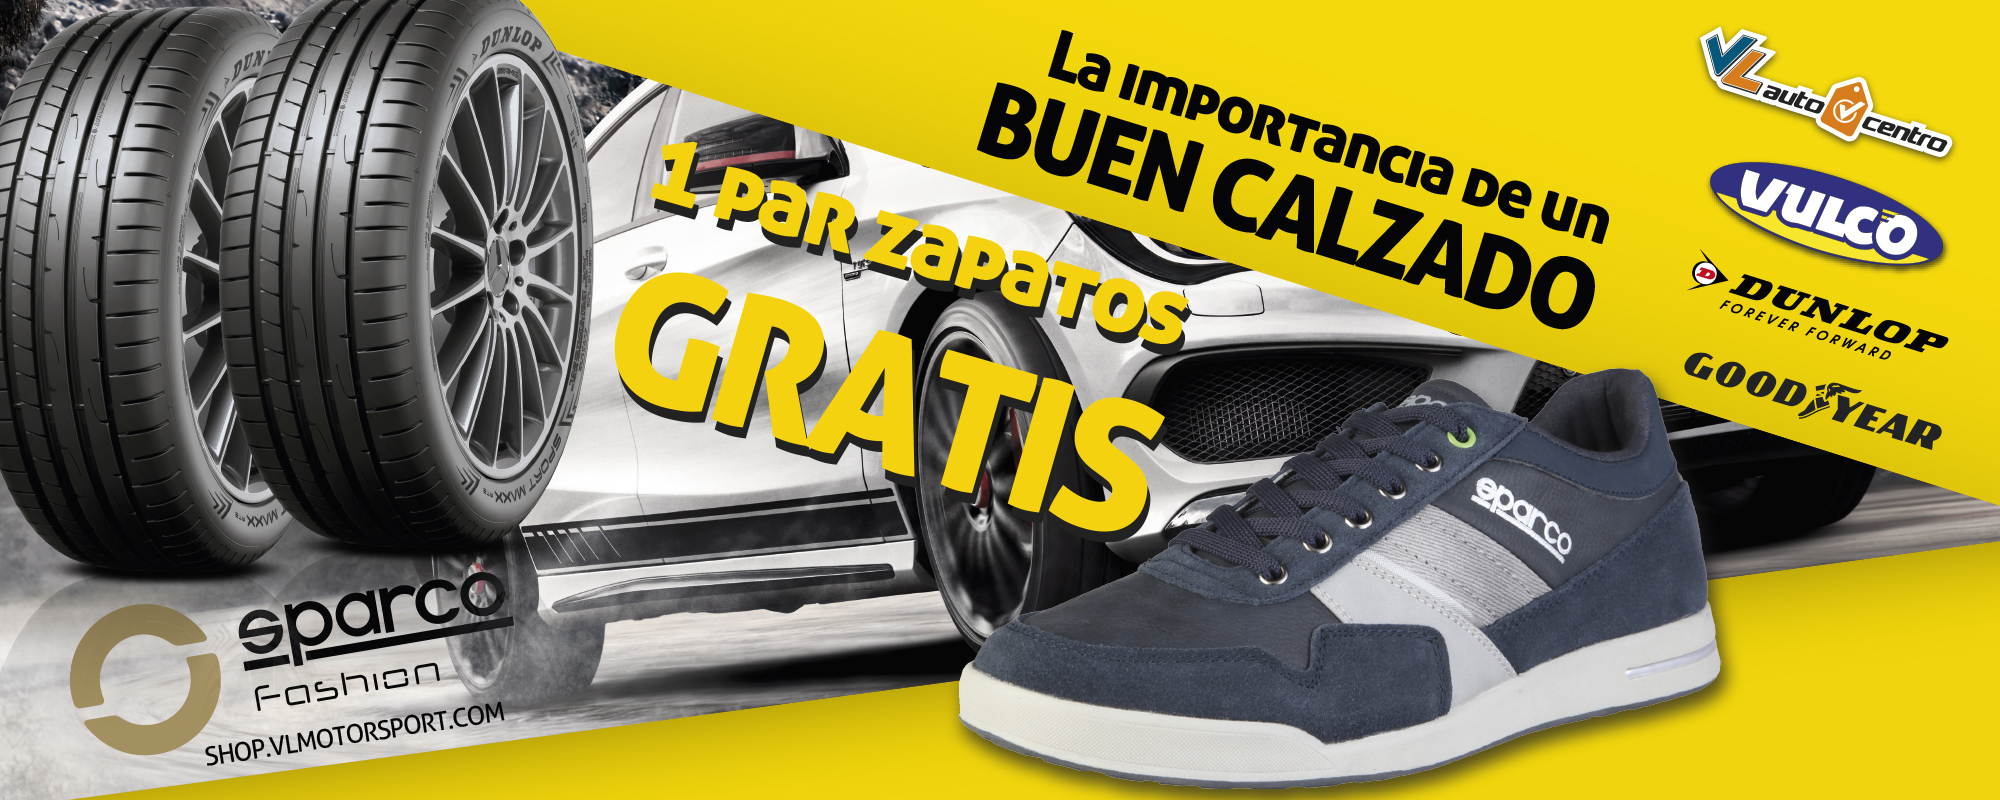 La importancia de un buen calzado, un par de Zapatos Sparco Fashion GRATIS por la compra de tus neumáticos.